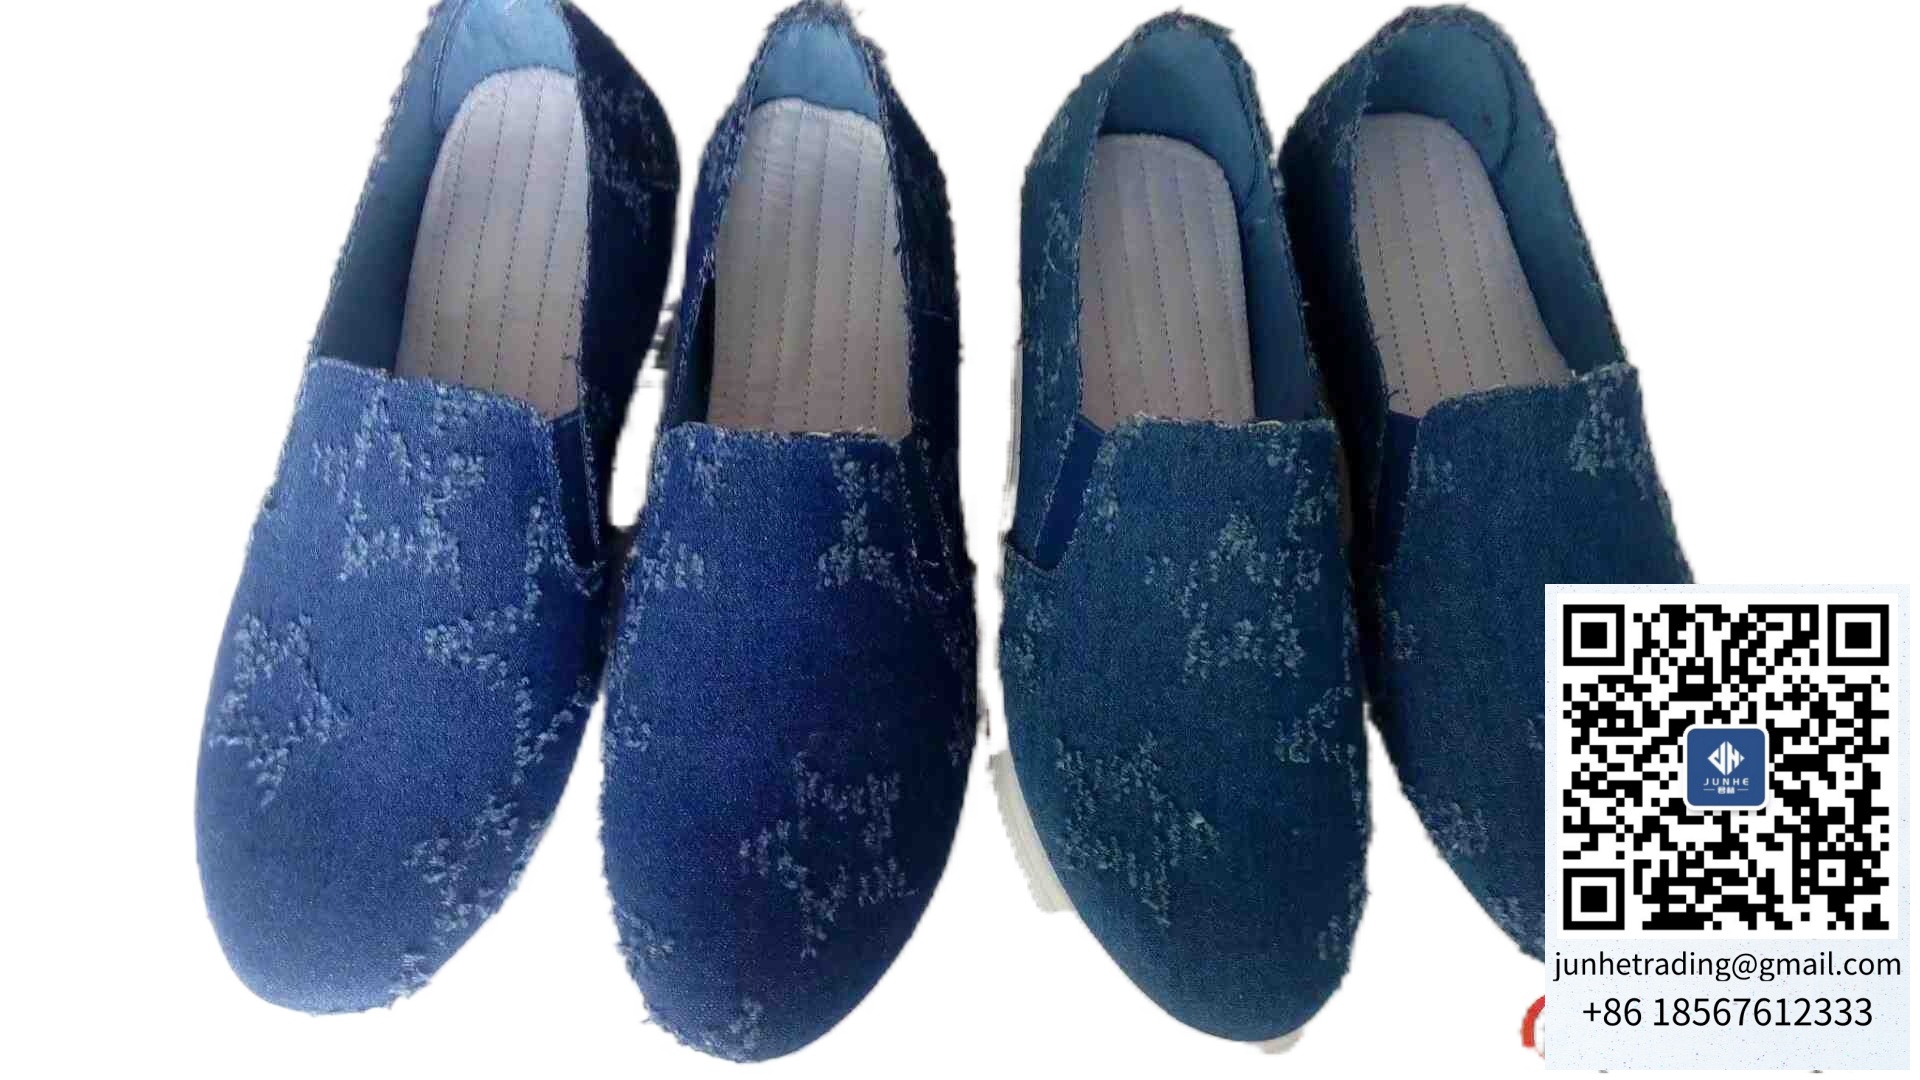 中国布鞋鞋都批发春秋款女款注塑布学生商标品牌178布鞋批发网图片